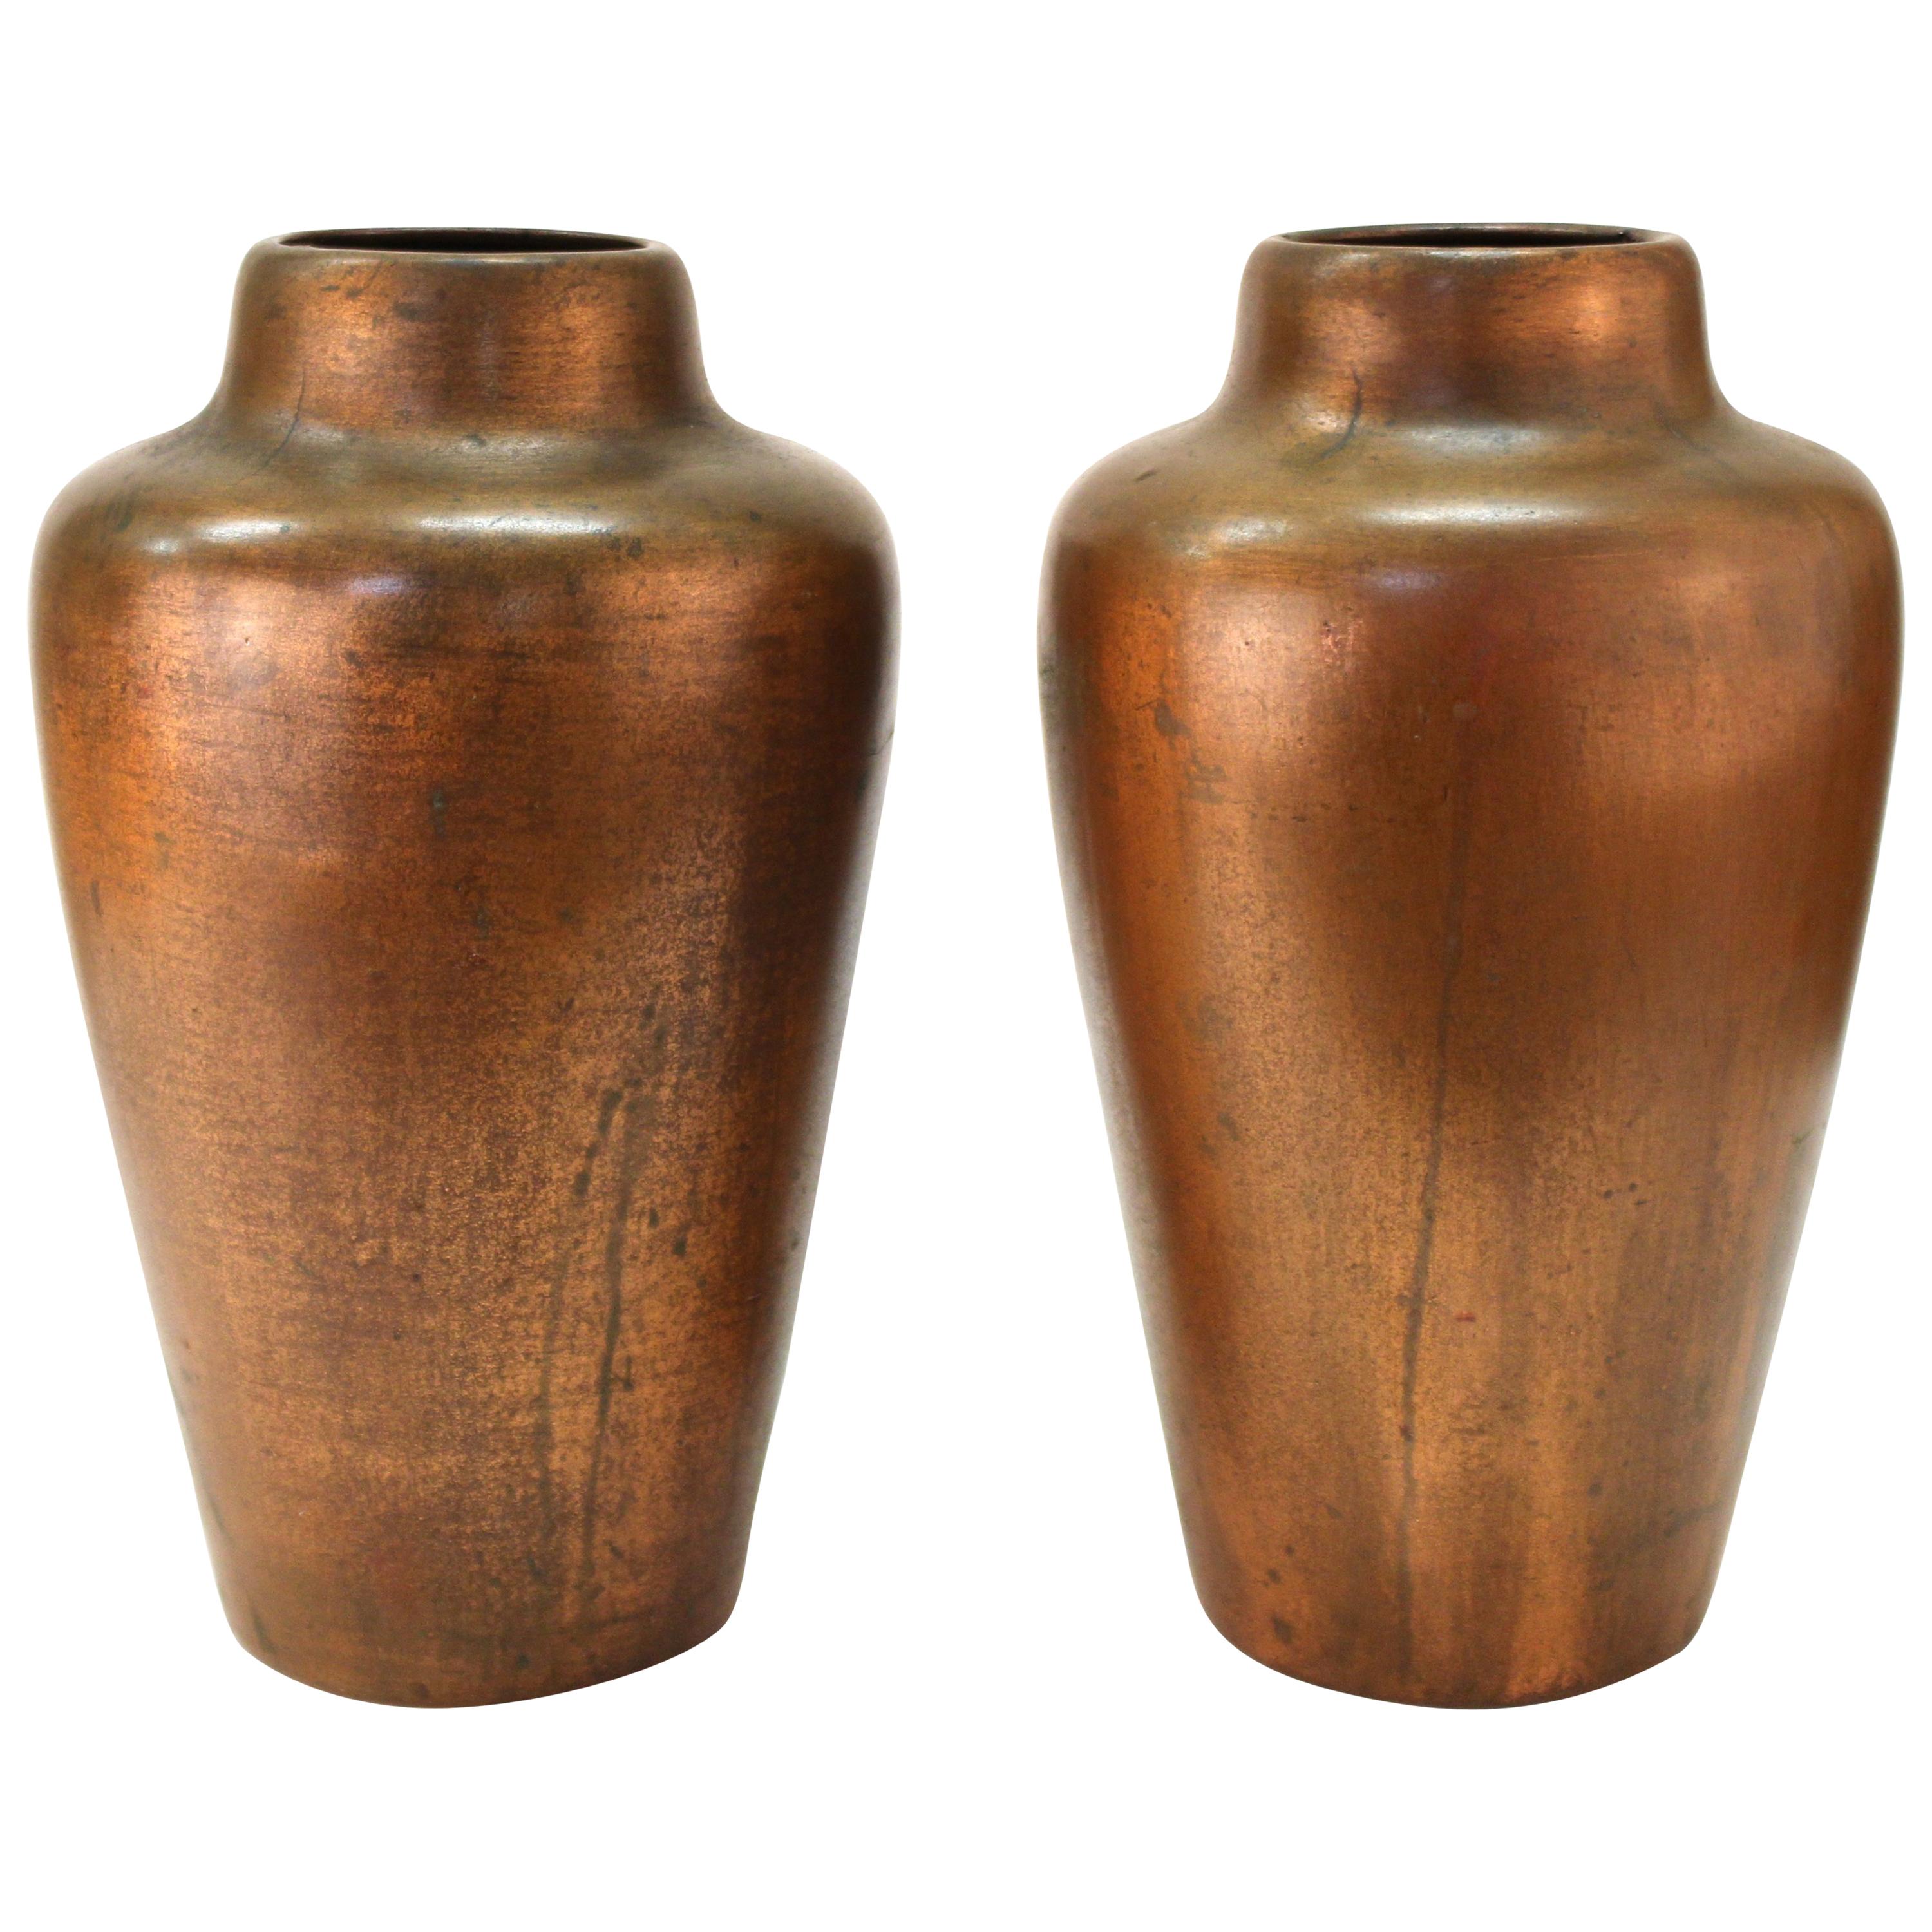 Clewell American Arts & Kunsthandwerkliche Vasen aus kupferhaltiger Keramik